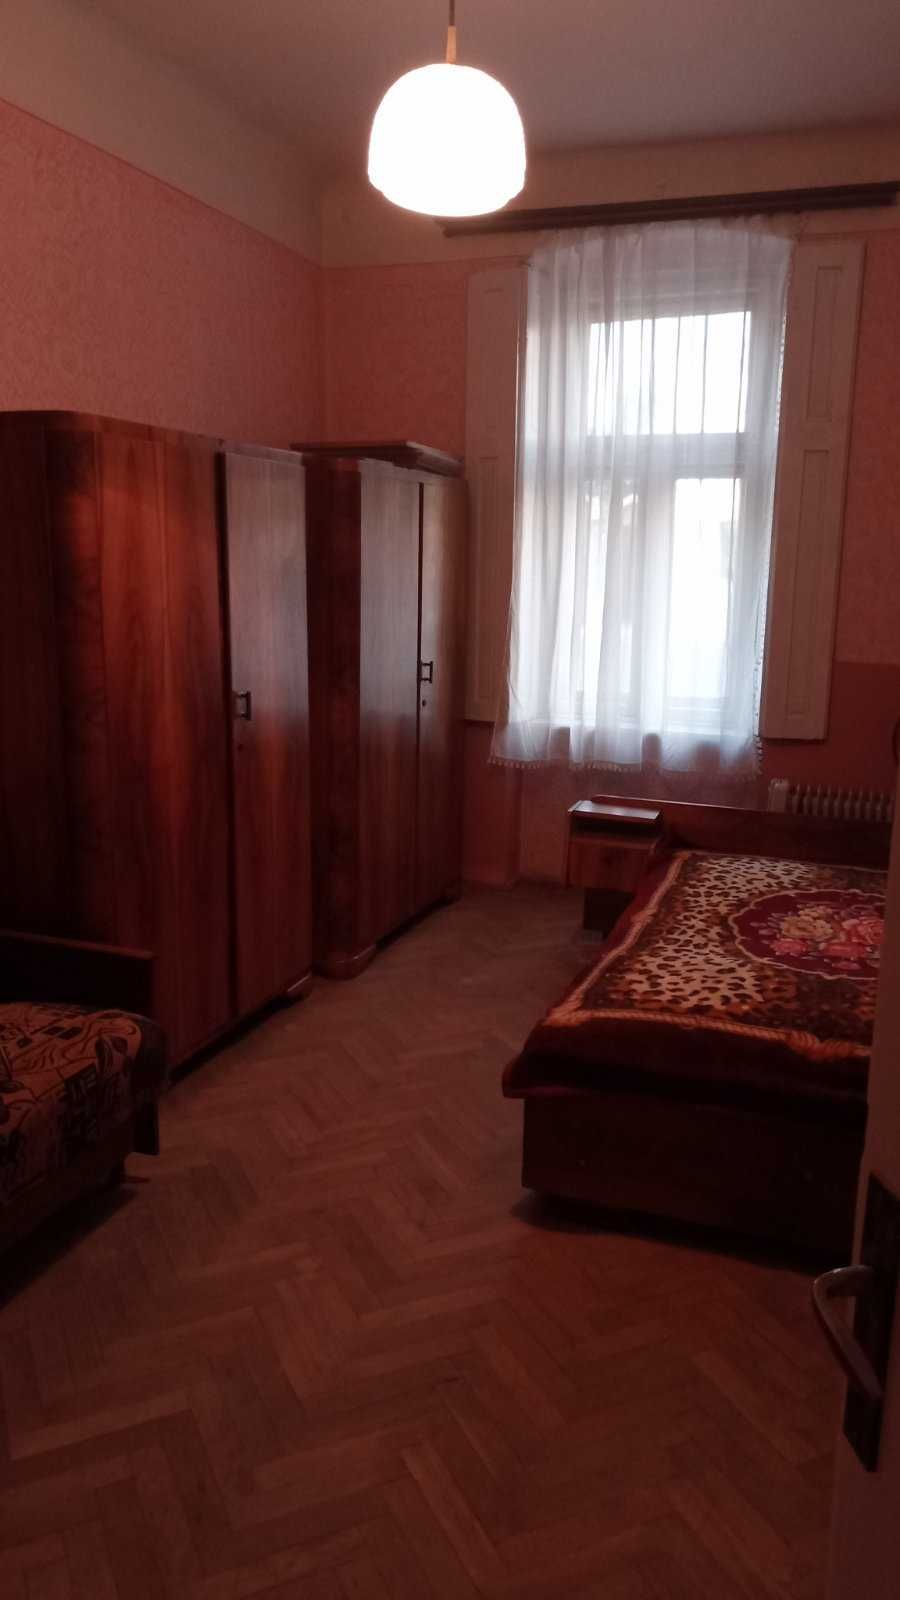 2-ох кімнатний напівособняк, квартира в безпечному м. Ужгород